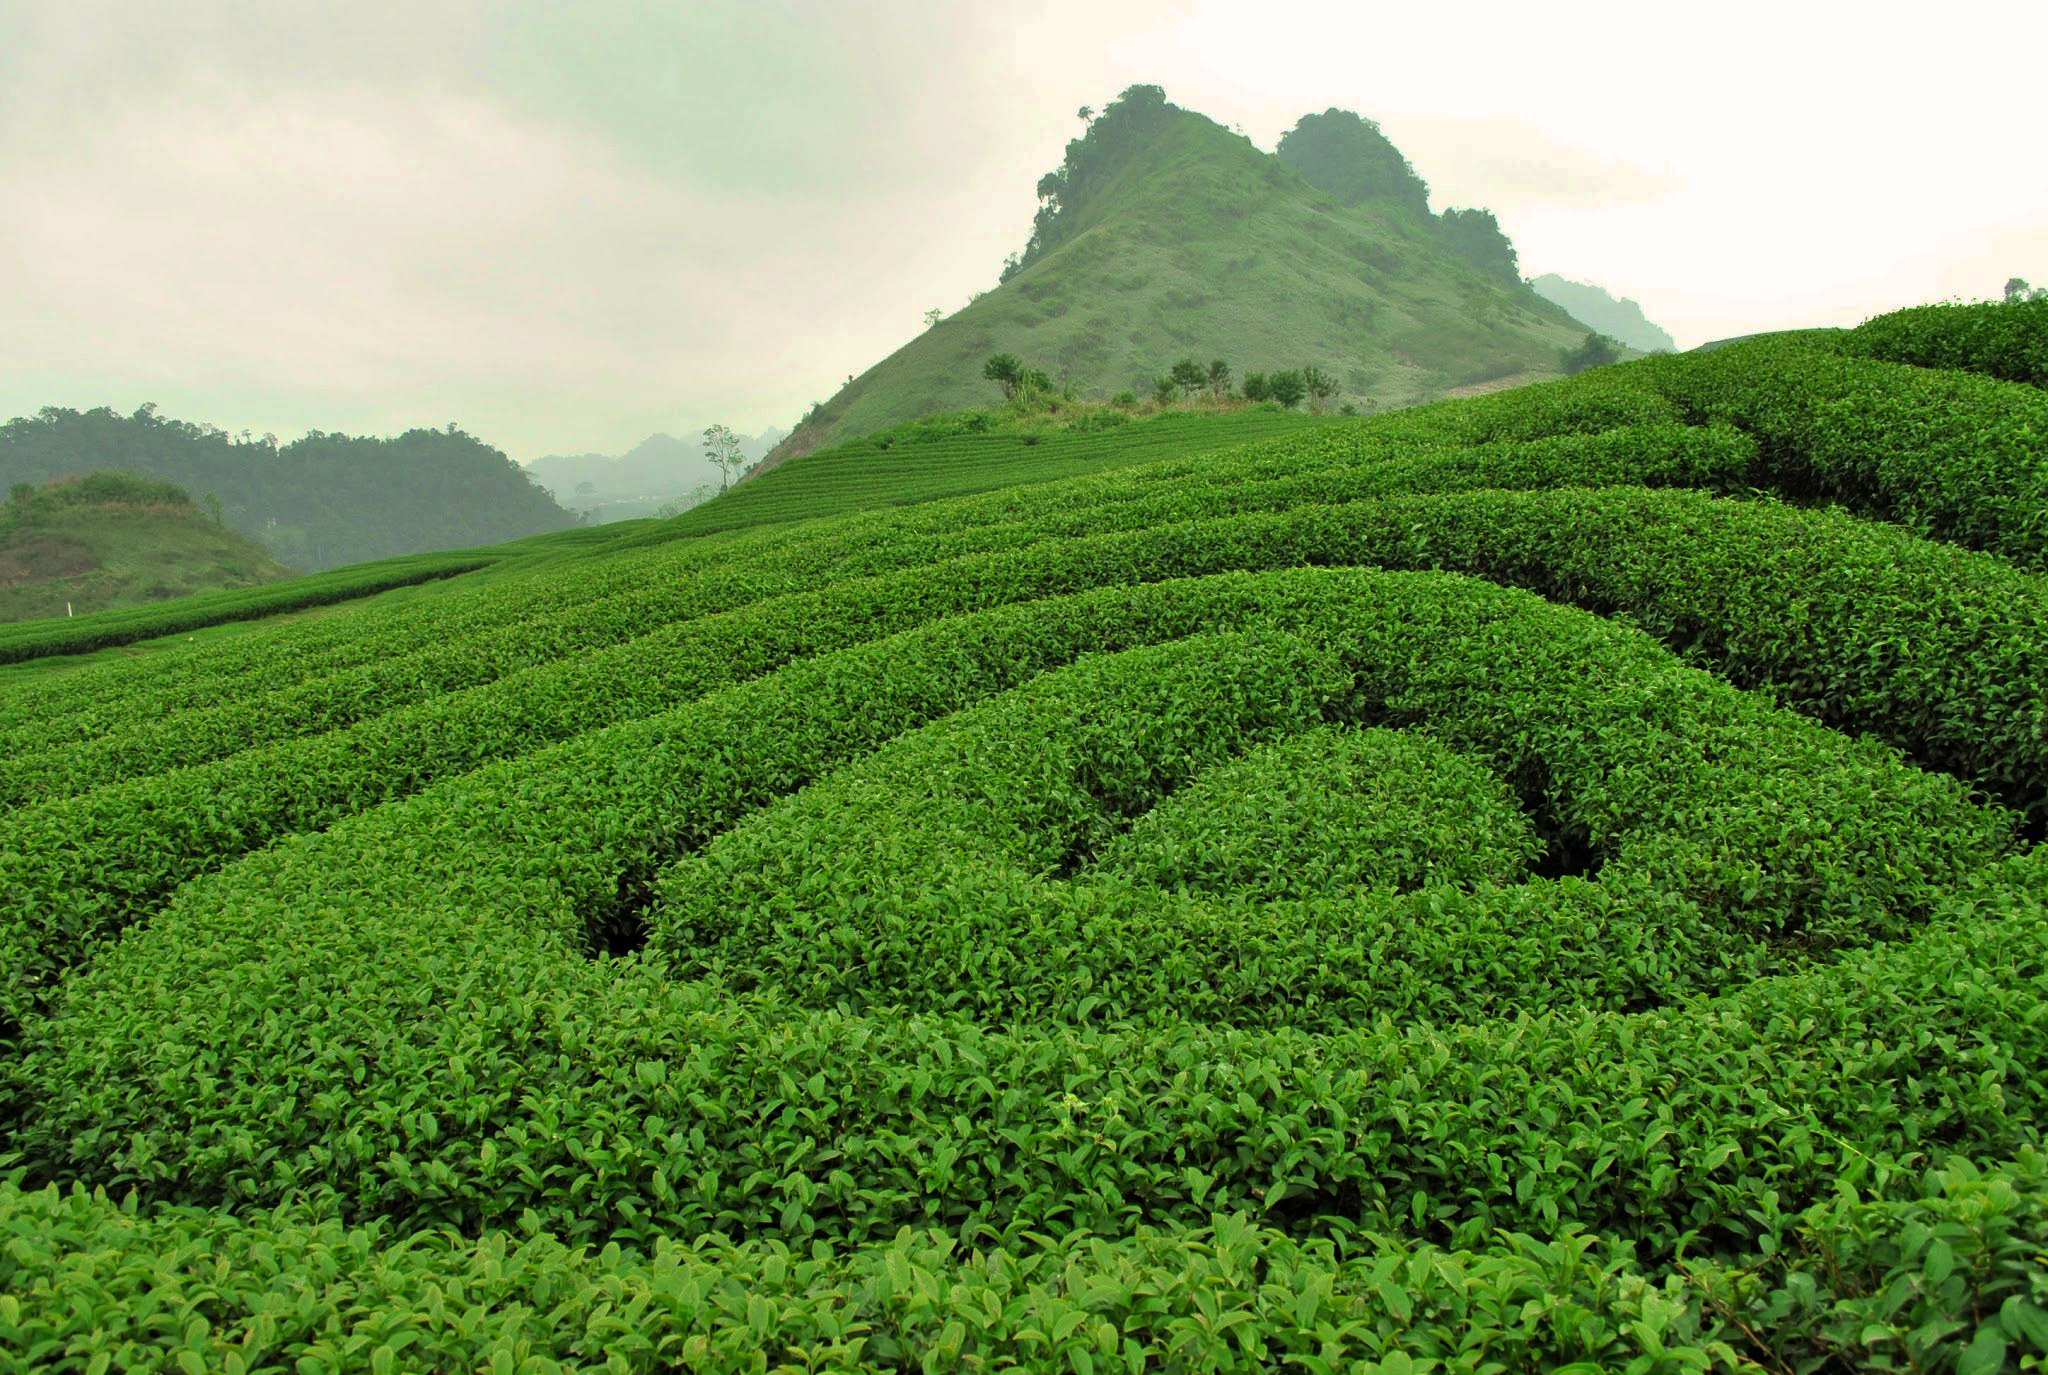 Đồi chè Trái Tim - Moc Chau Tea Plantation | Yeudulich